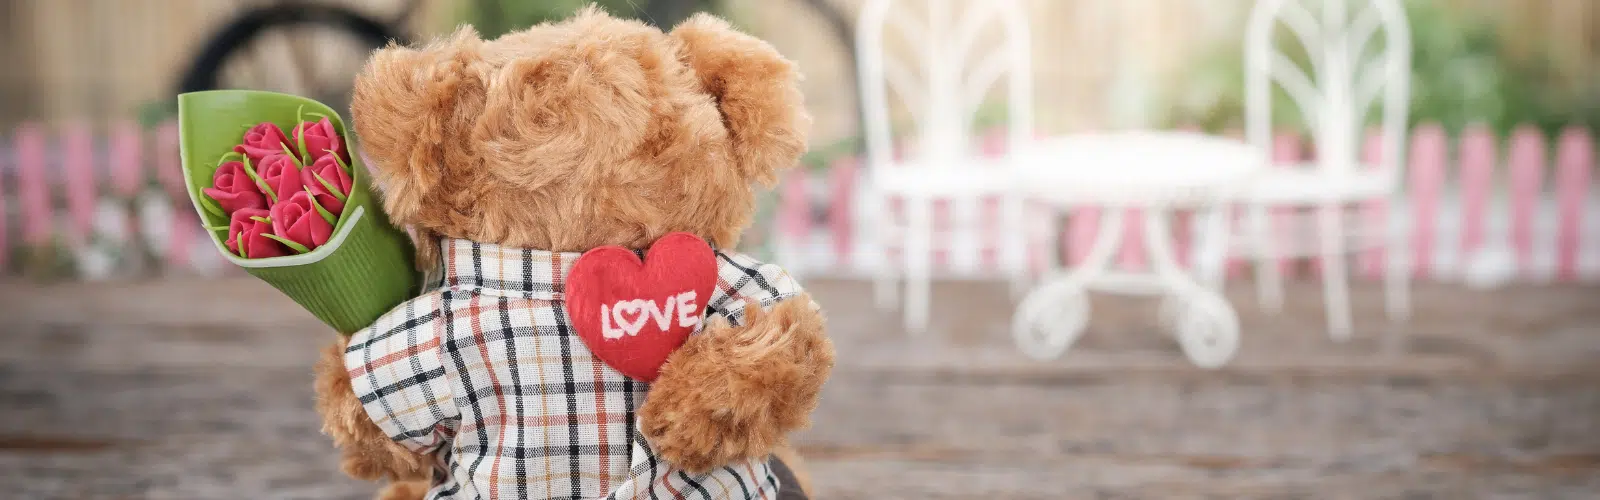 Saint Valentin : 8 idées d’activités pour célébrer l’amour avec les enfants !